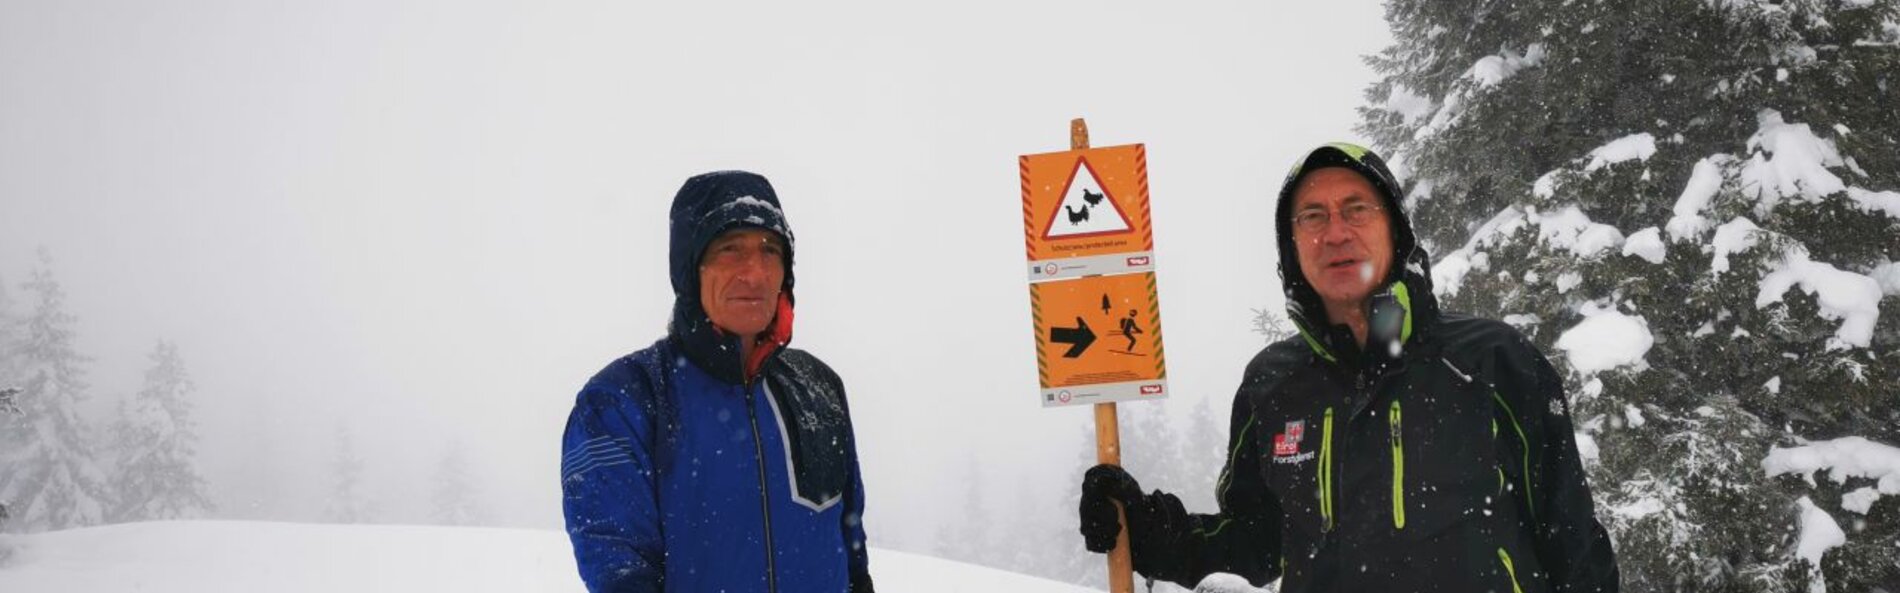 Mitglieder des AK Obernberg beim Beschildern einer Skitour